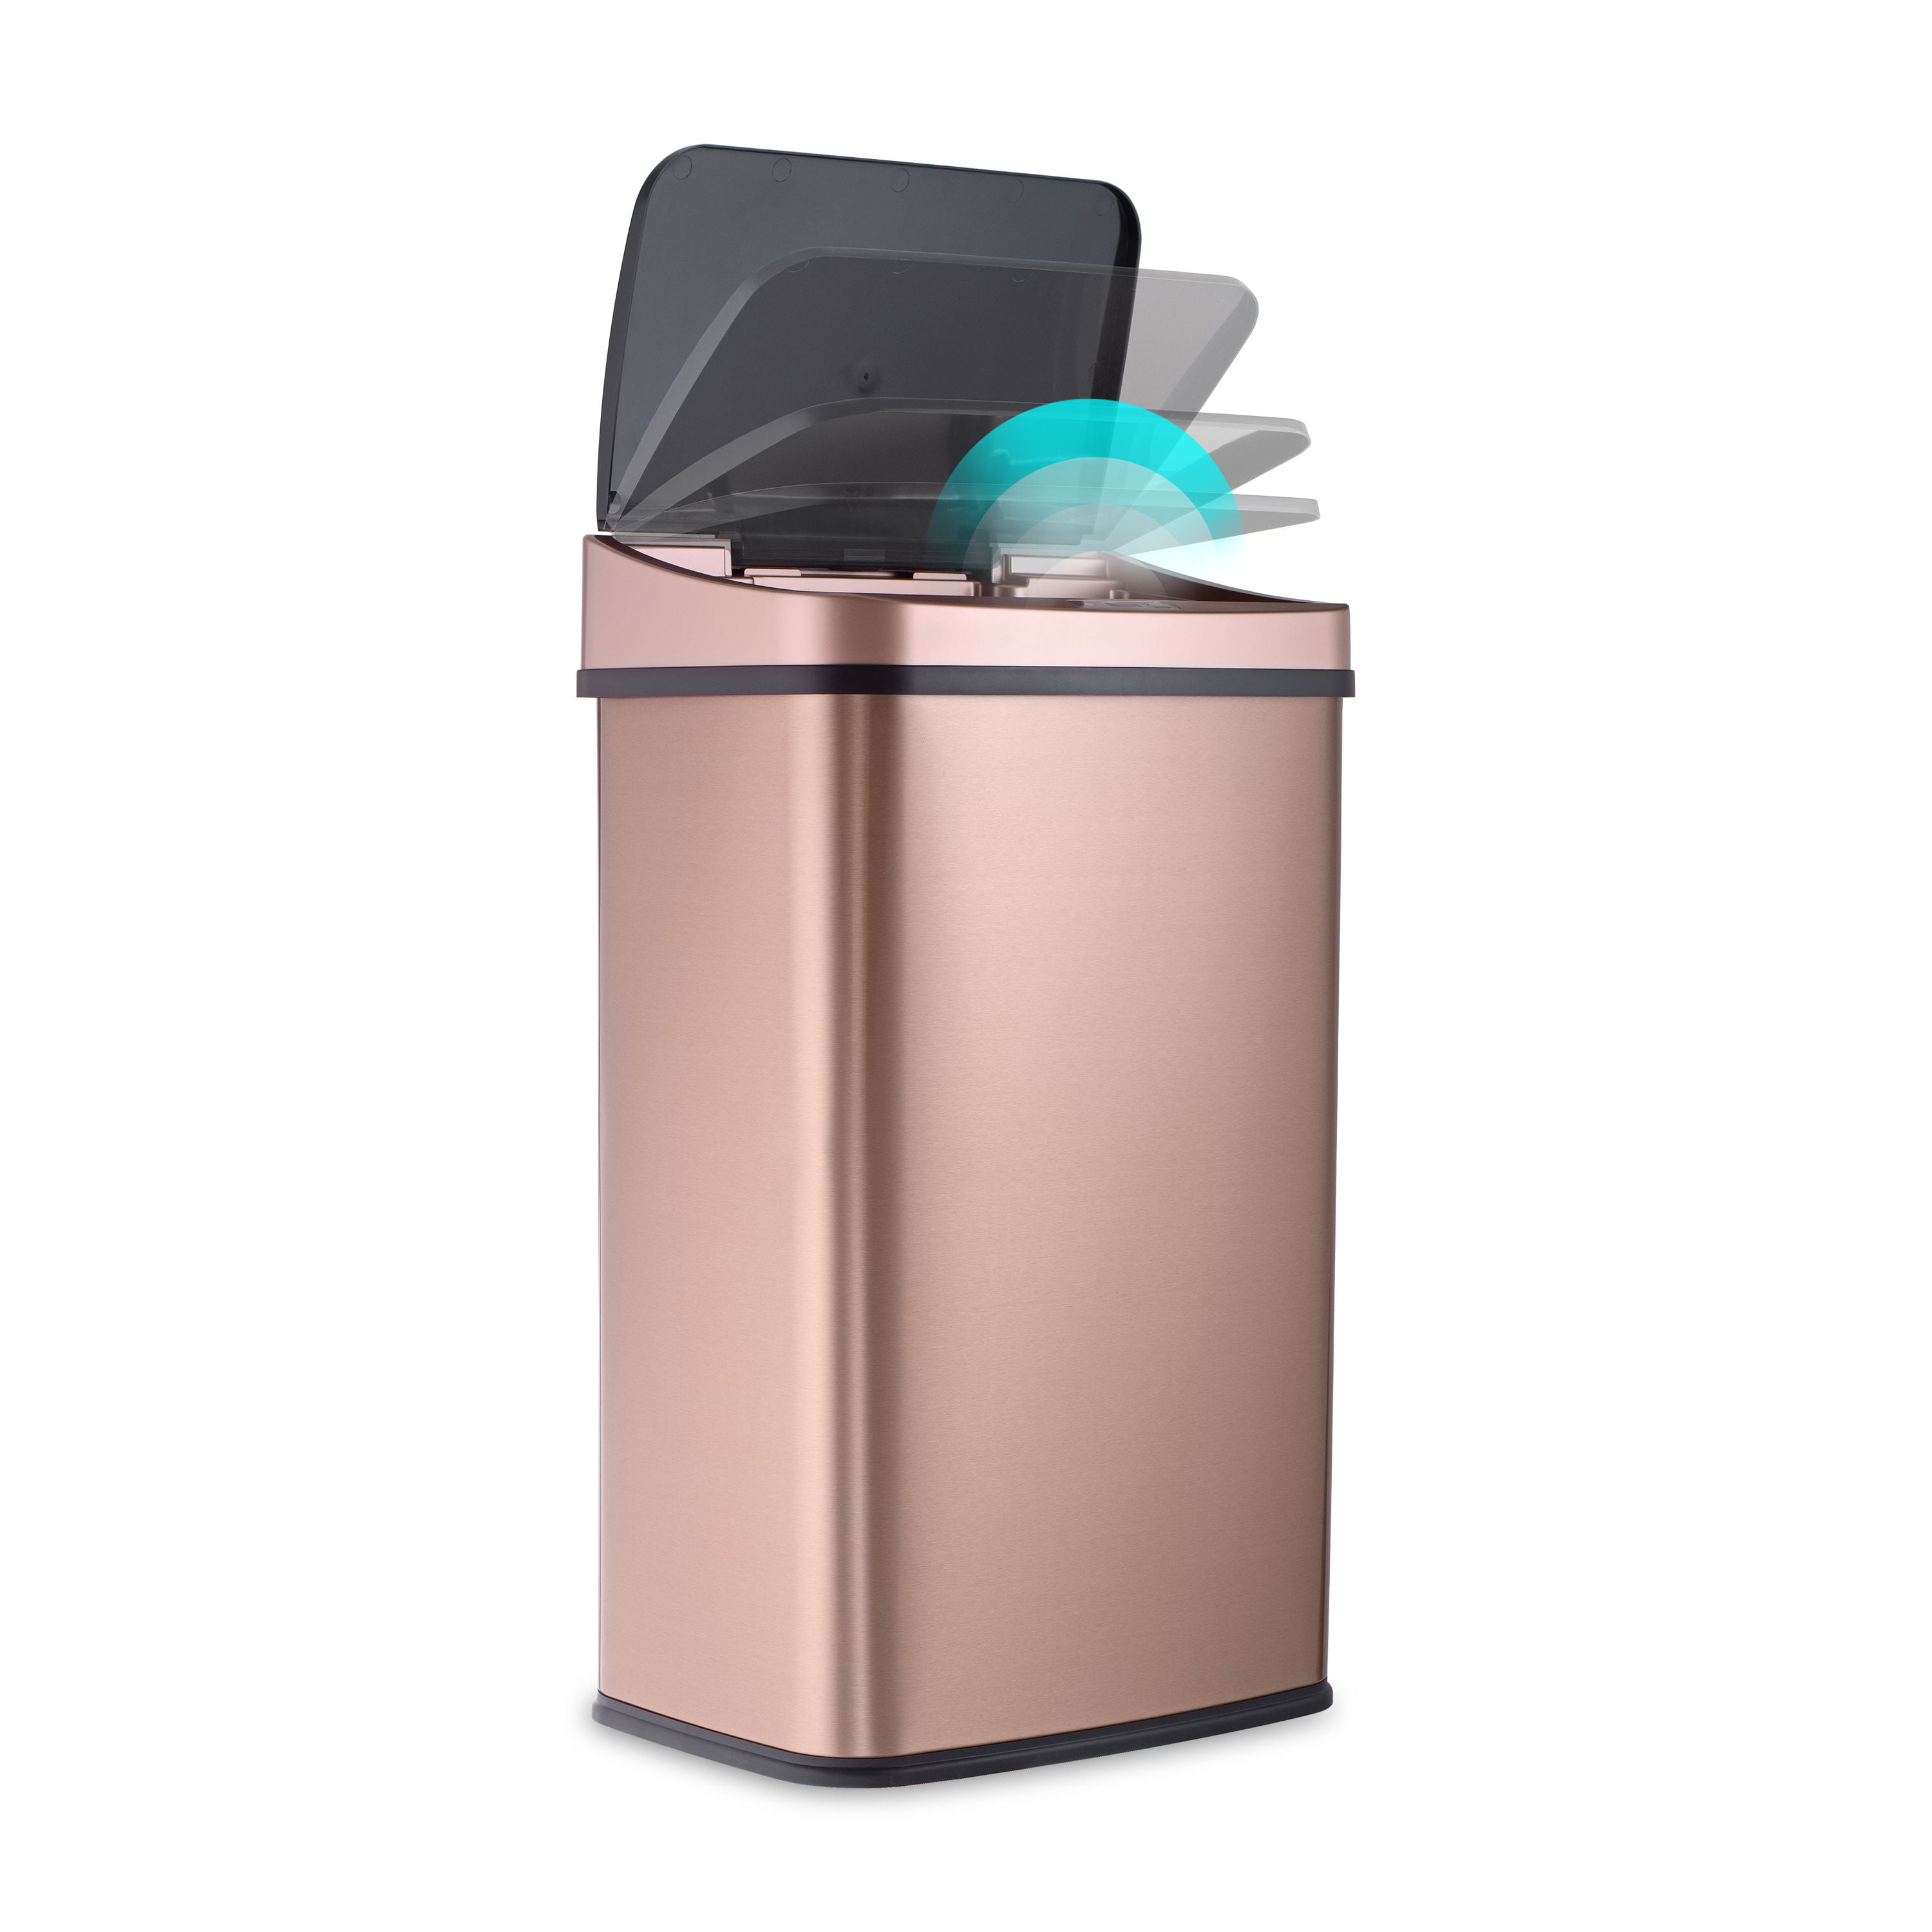 Hanover Trash Can with Sensor Lid, 12-Liter - Rose Gold